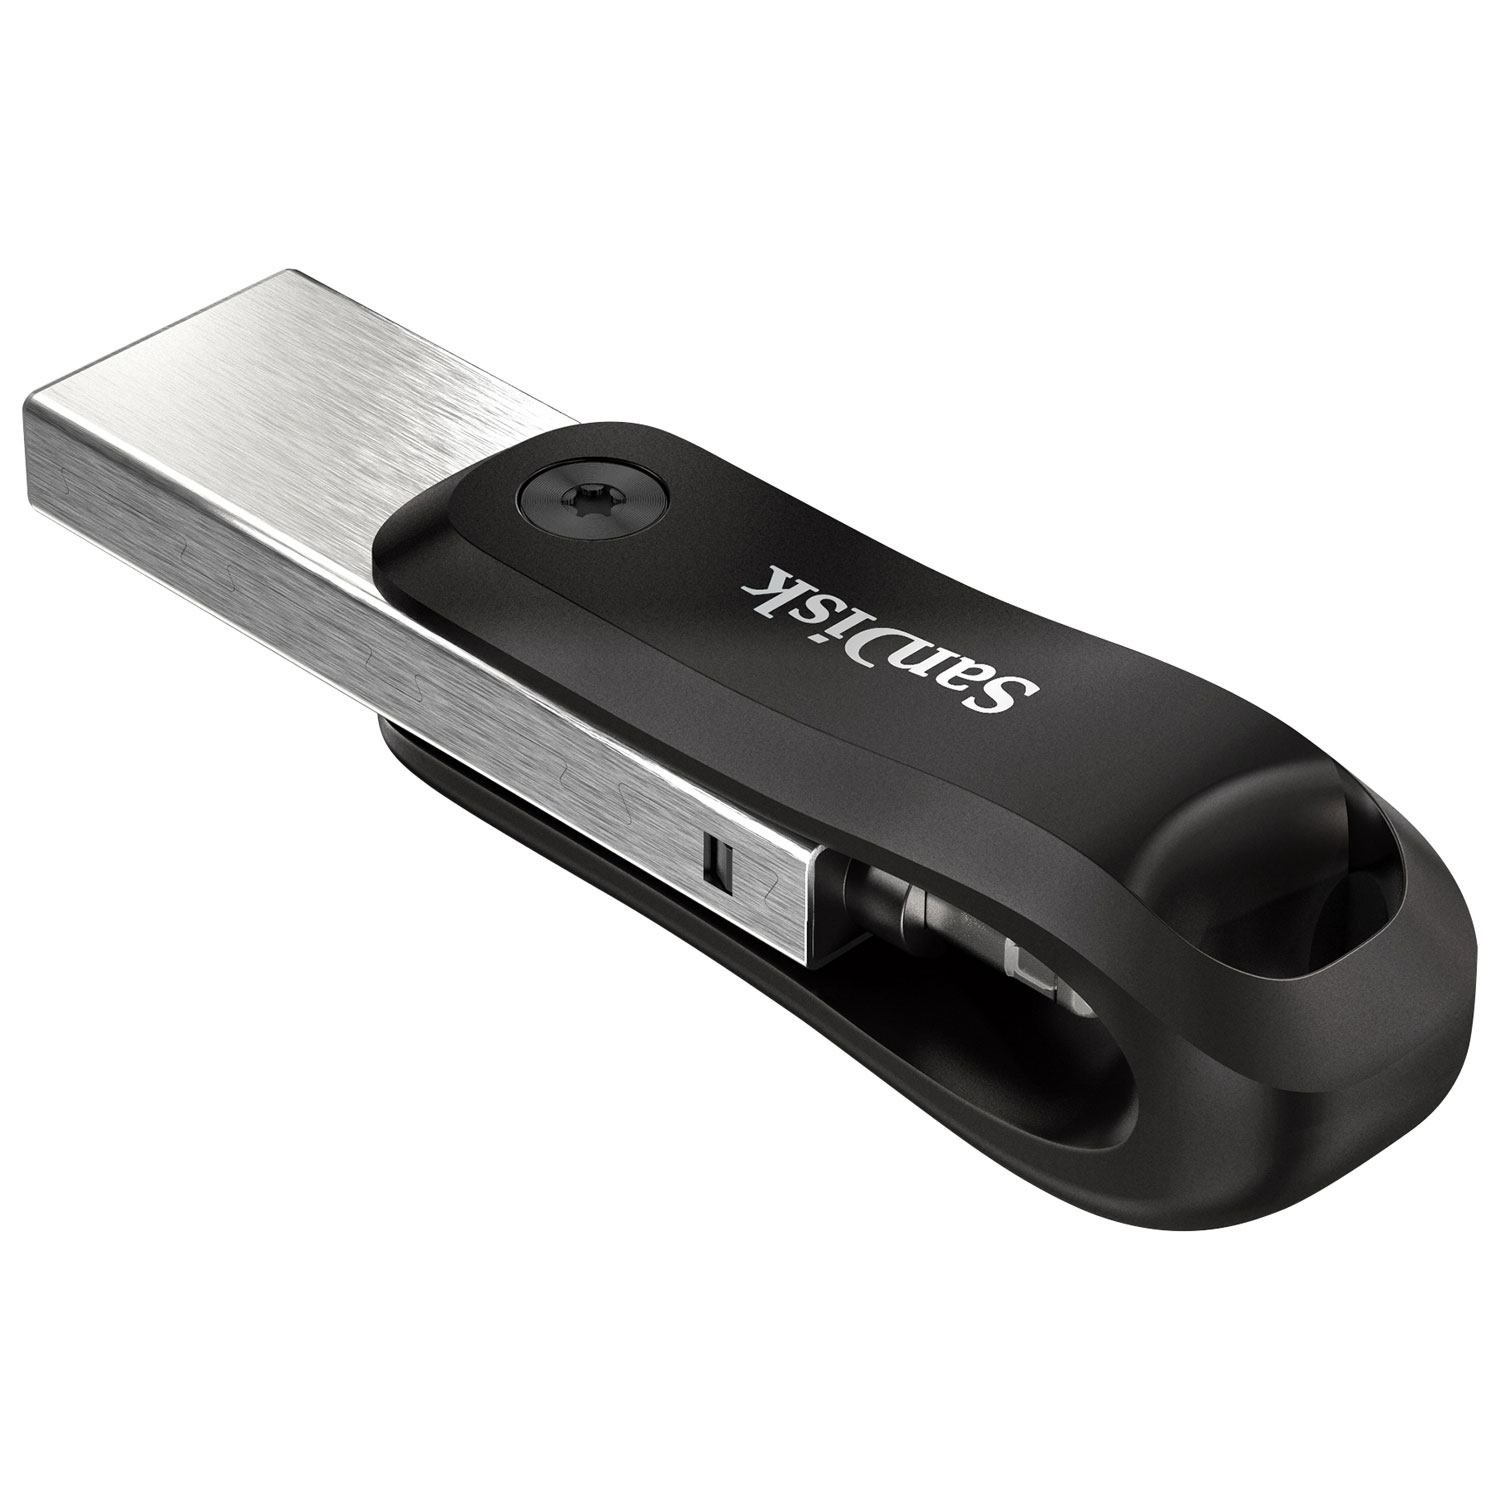 Mémoire cache fitplus usb 3.1 clé USB clé USB 32Gb 200mb / s clé USB mini  clé USB clé USB clé USB